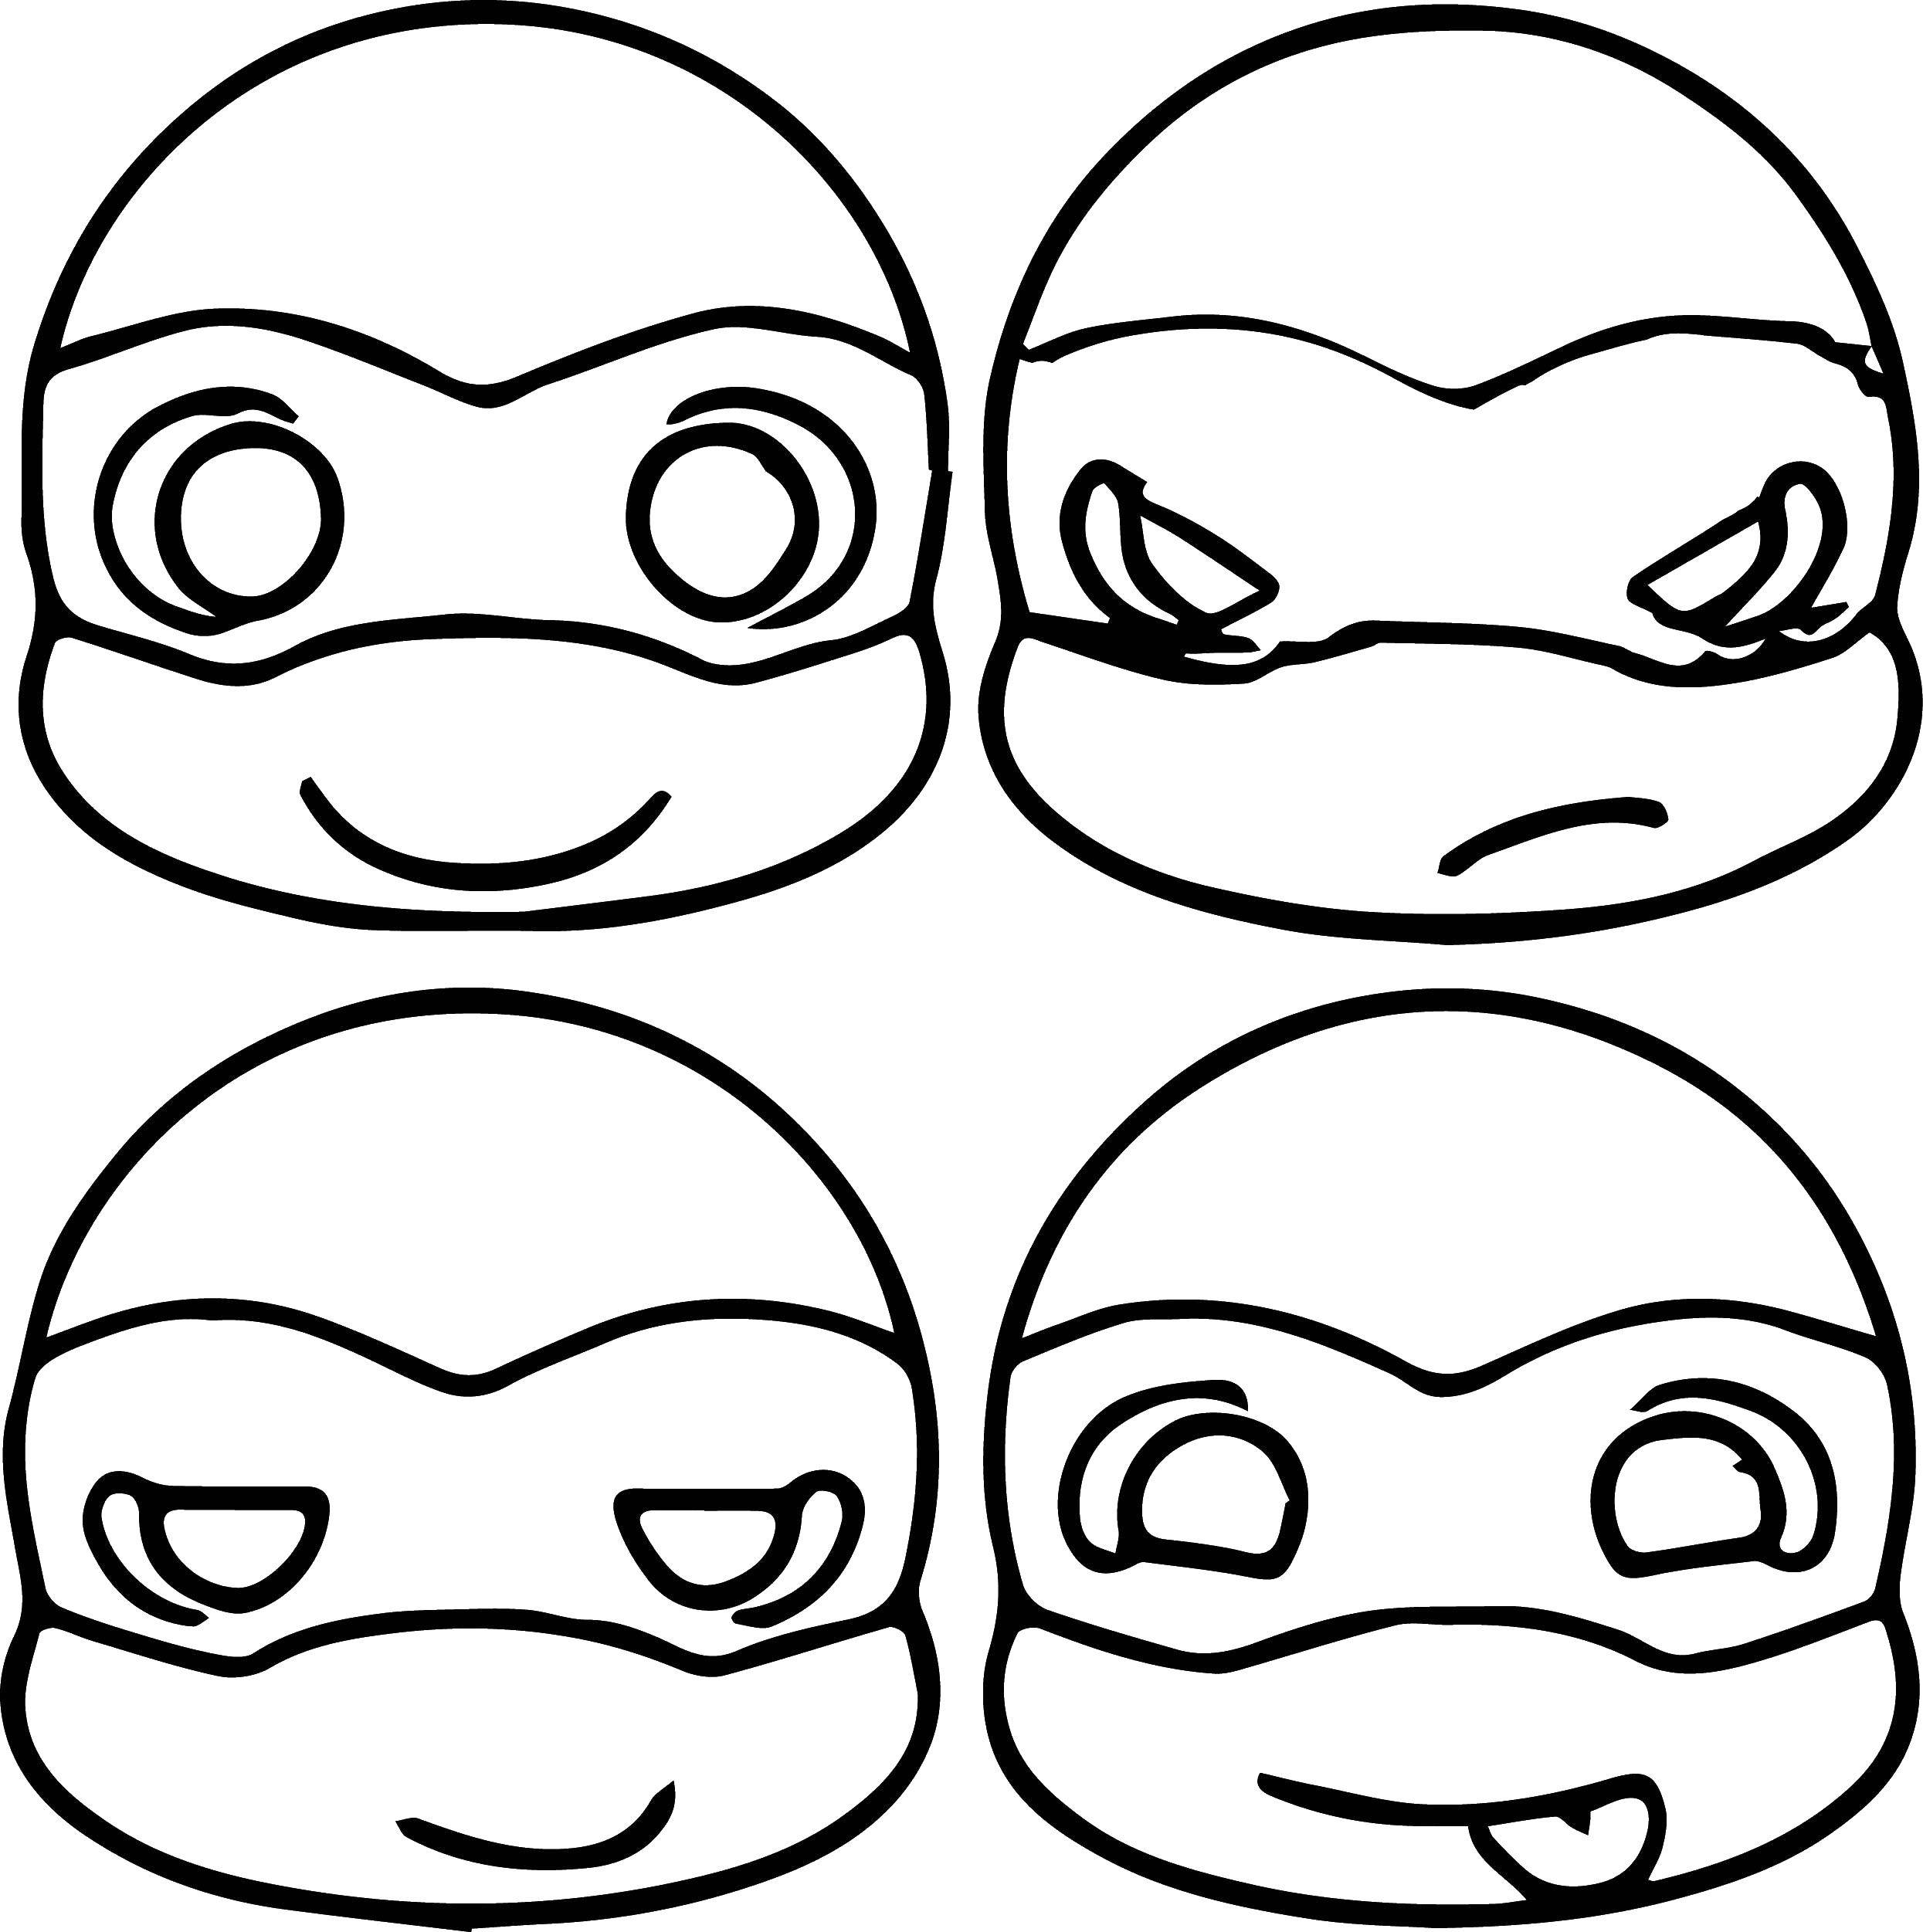 Coloring The faces of the ninja turtles. Category teenage mutant ninja turtles. Tags:  cartoon ninja turtles.